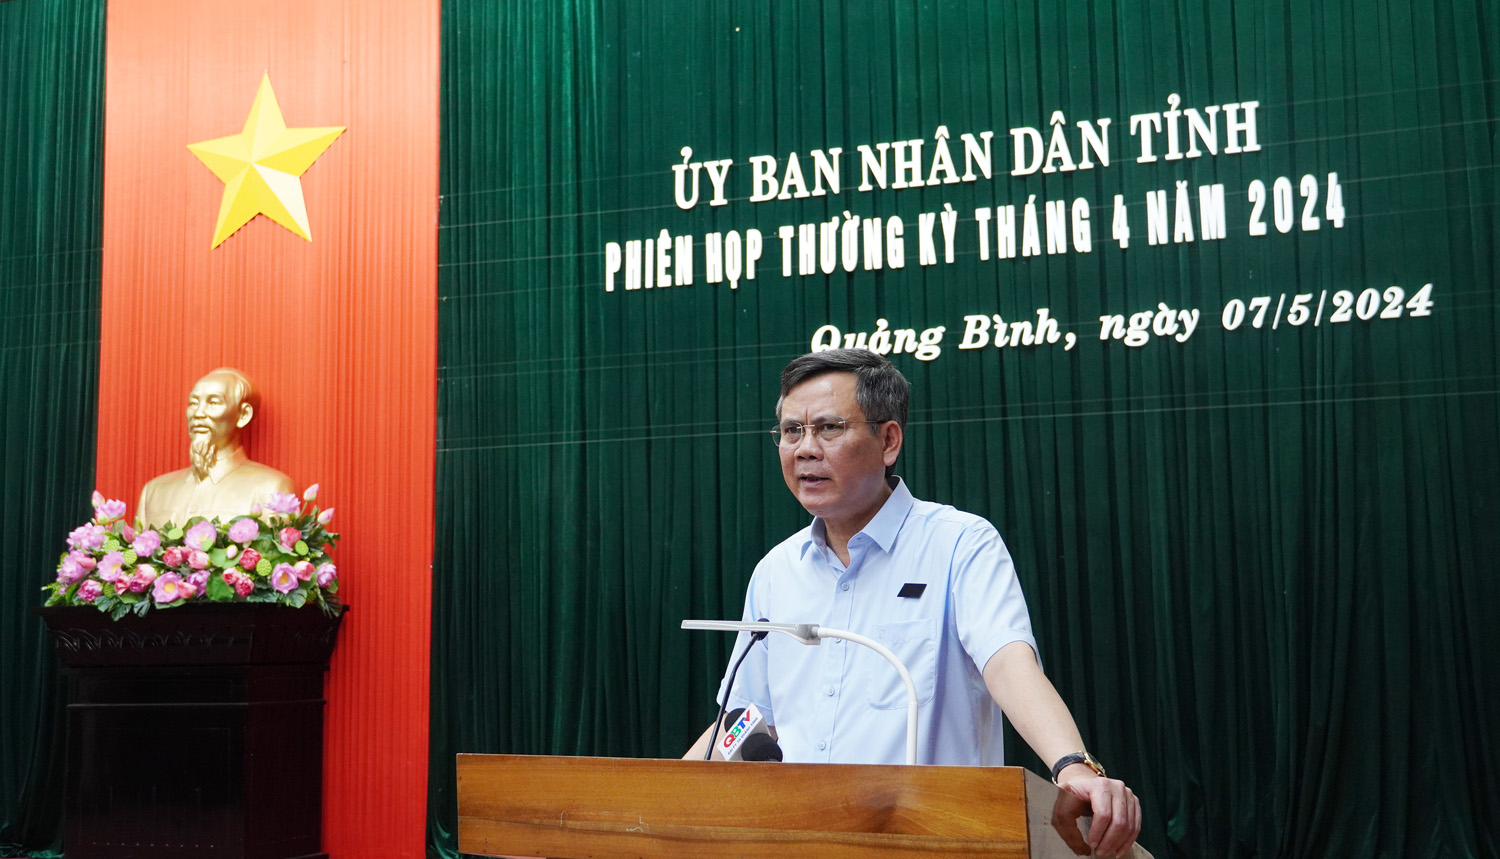 Đồng chí Chủ tịch UBND tỉnh Trần Thắng kết luận phiên họp thường kỳ tháng 4/2024.